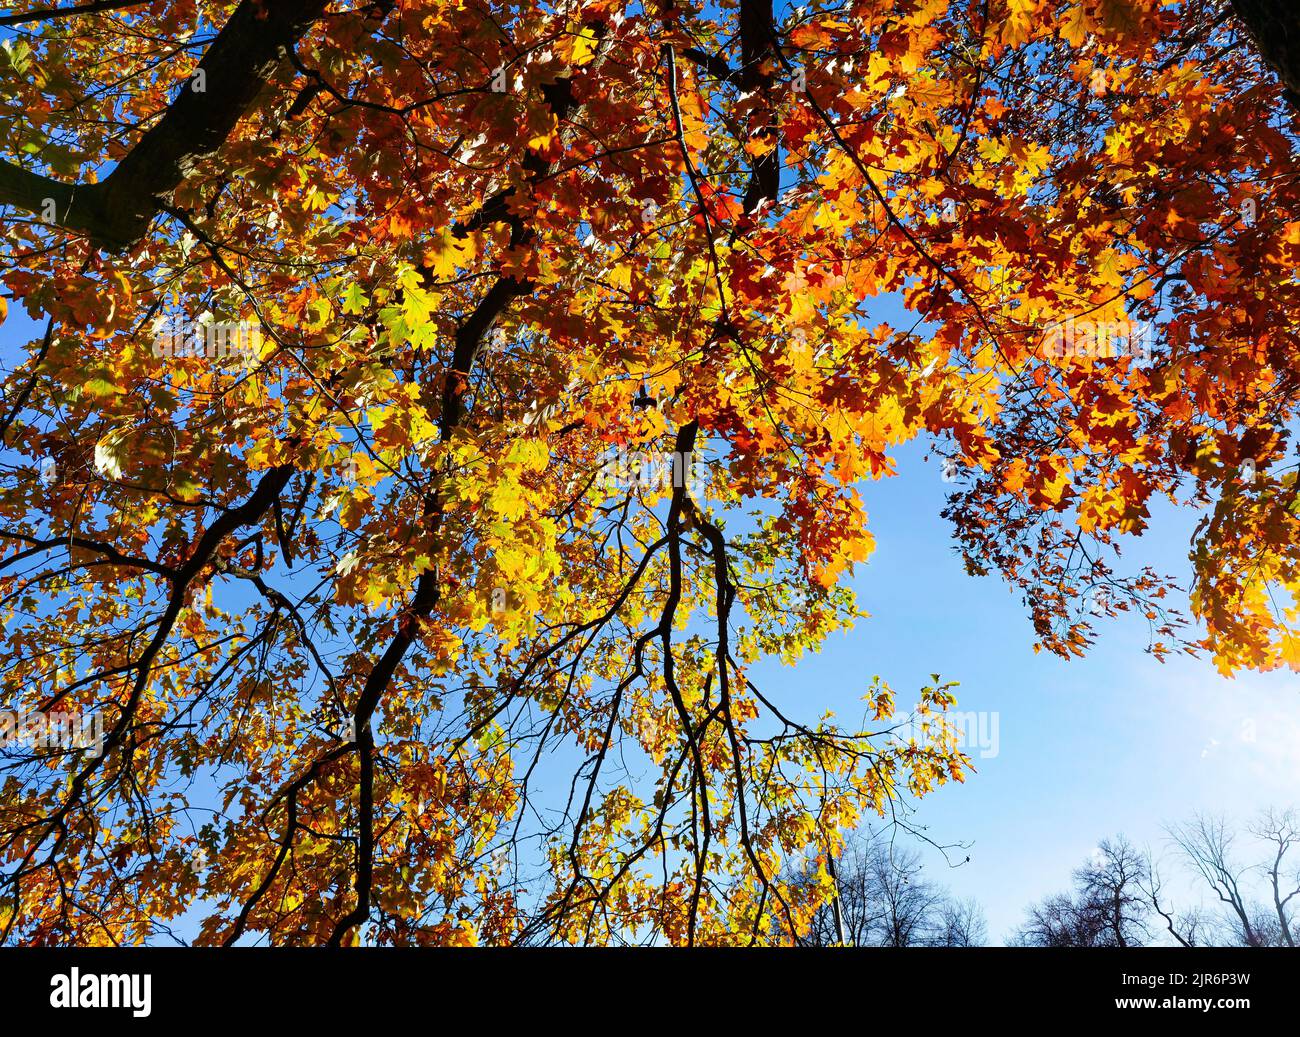 Wechselnde Blätter auf einer großen Eiche nehmen wunderschöne Farben an, während die Sonne in der Herbstsaison durch das Laub strömt. Stockfoto